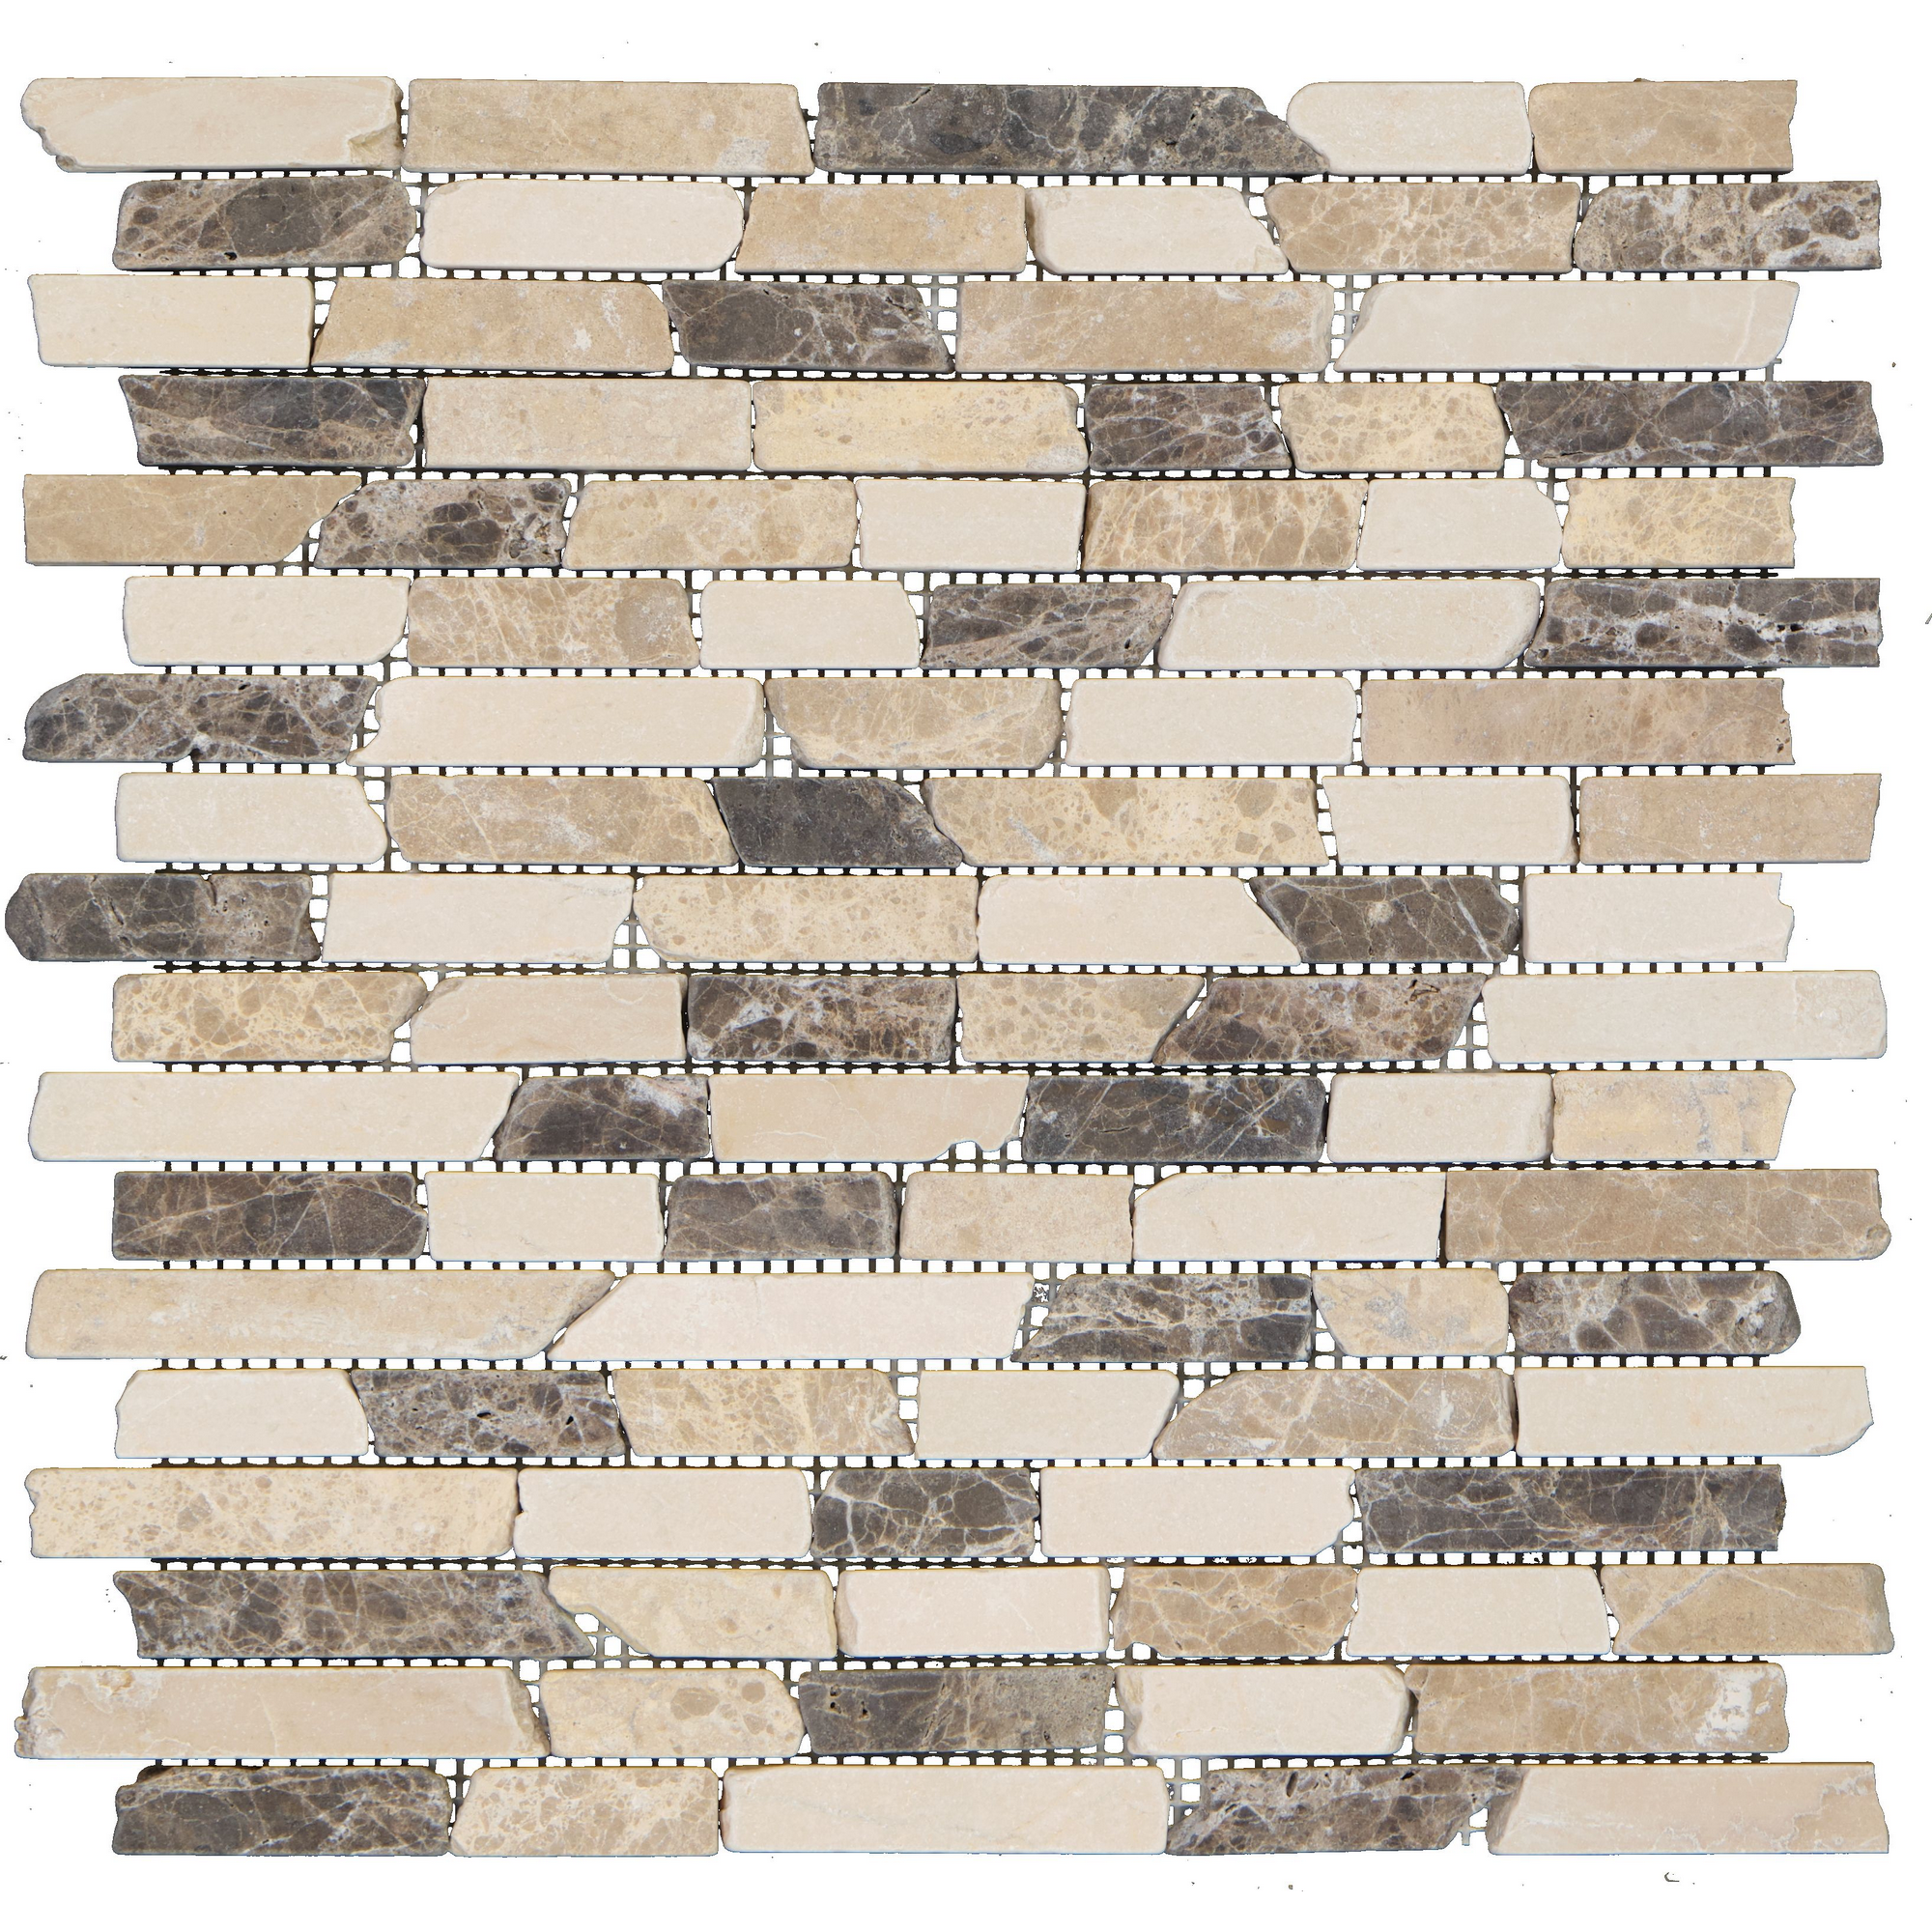 Mosaikfliese 'Emperador' Naturstein beige/grau/braun 30 x 30 cm + product picture